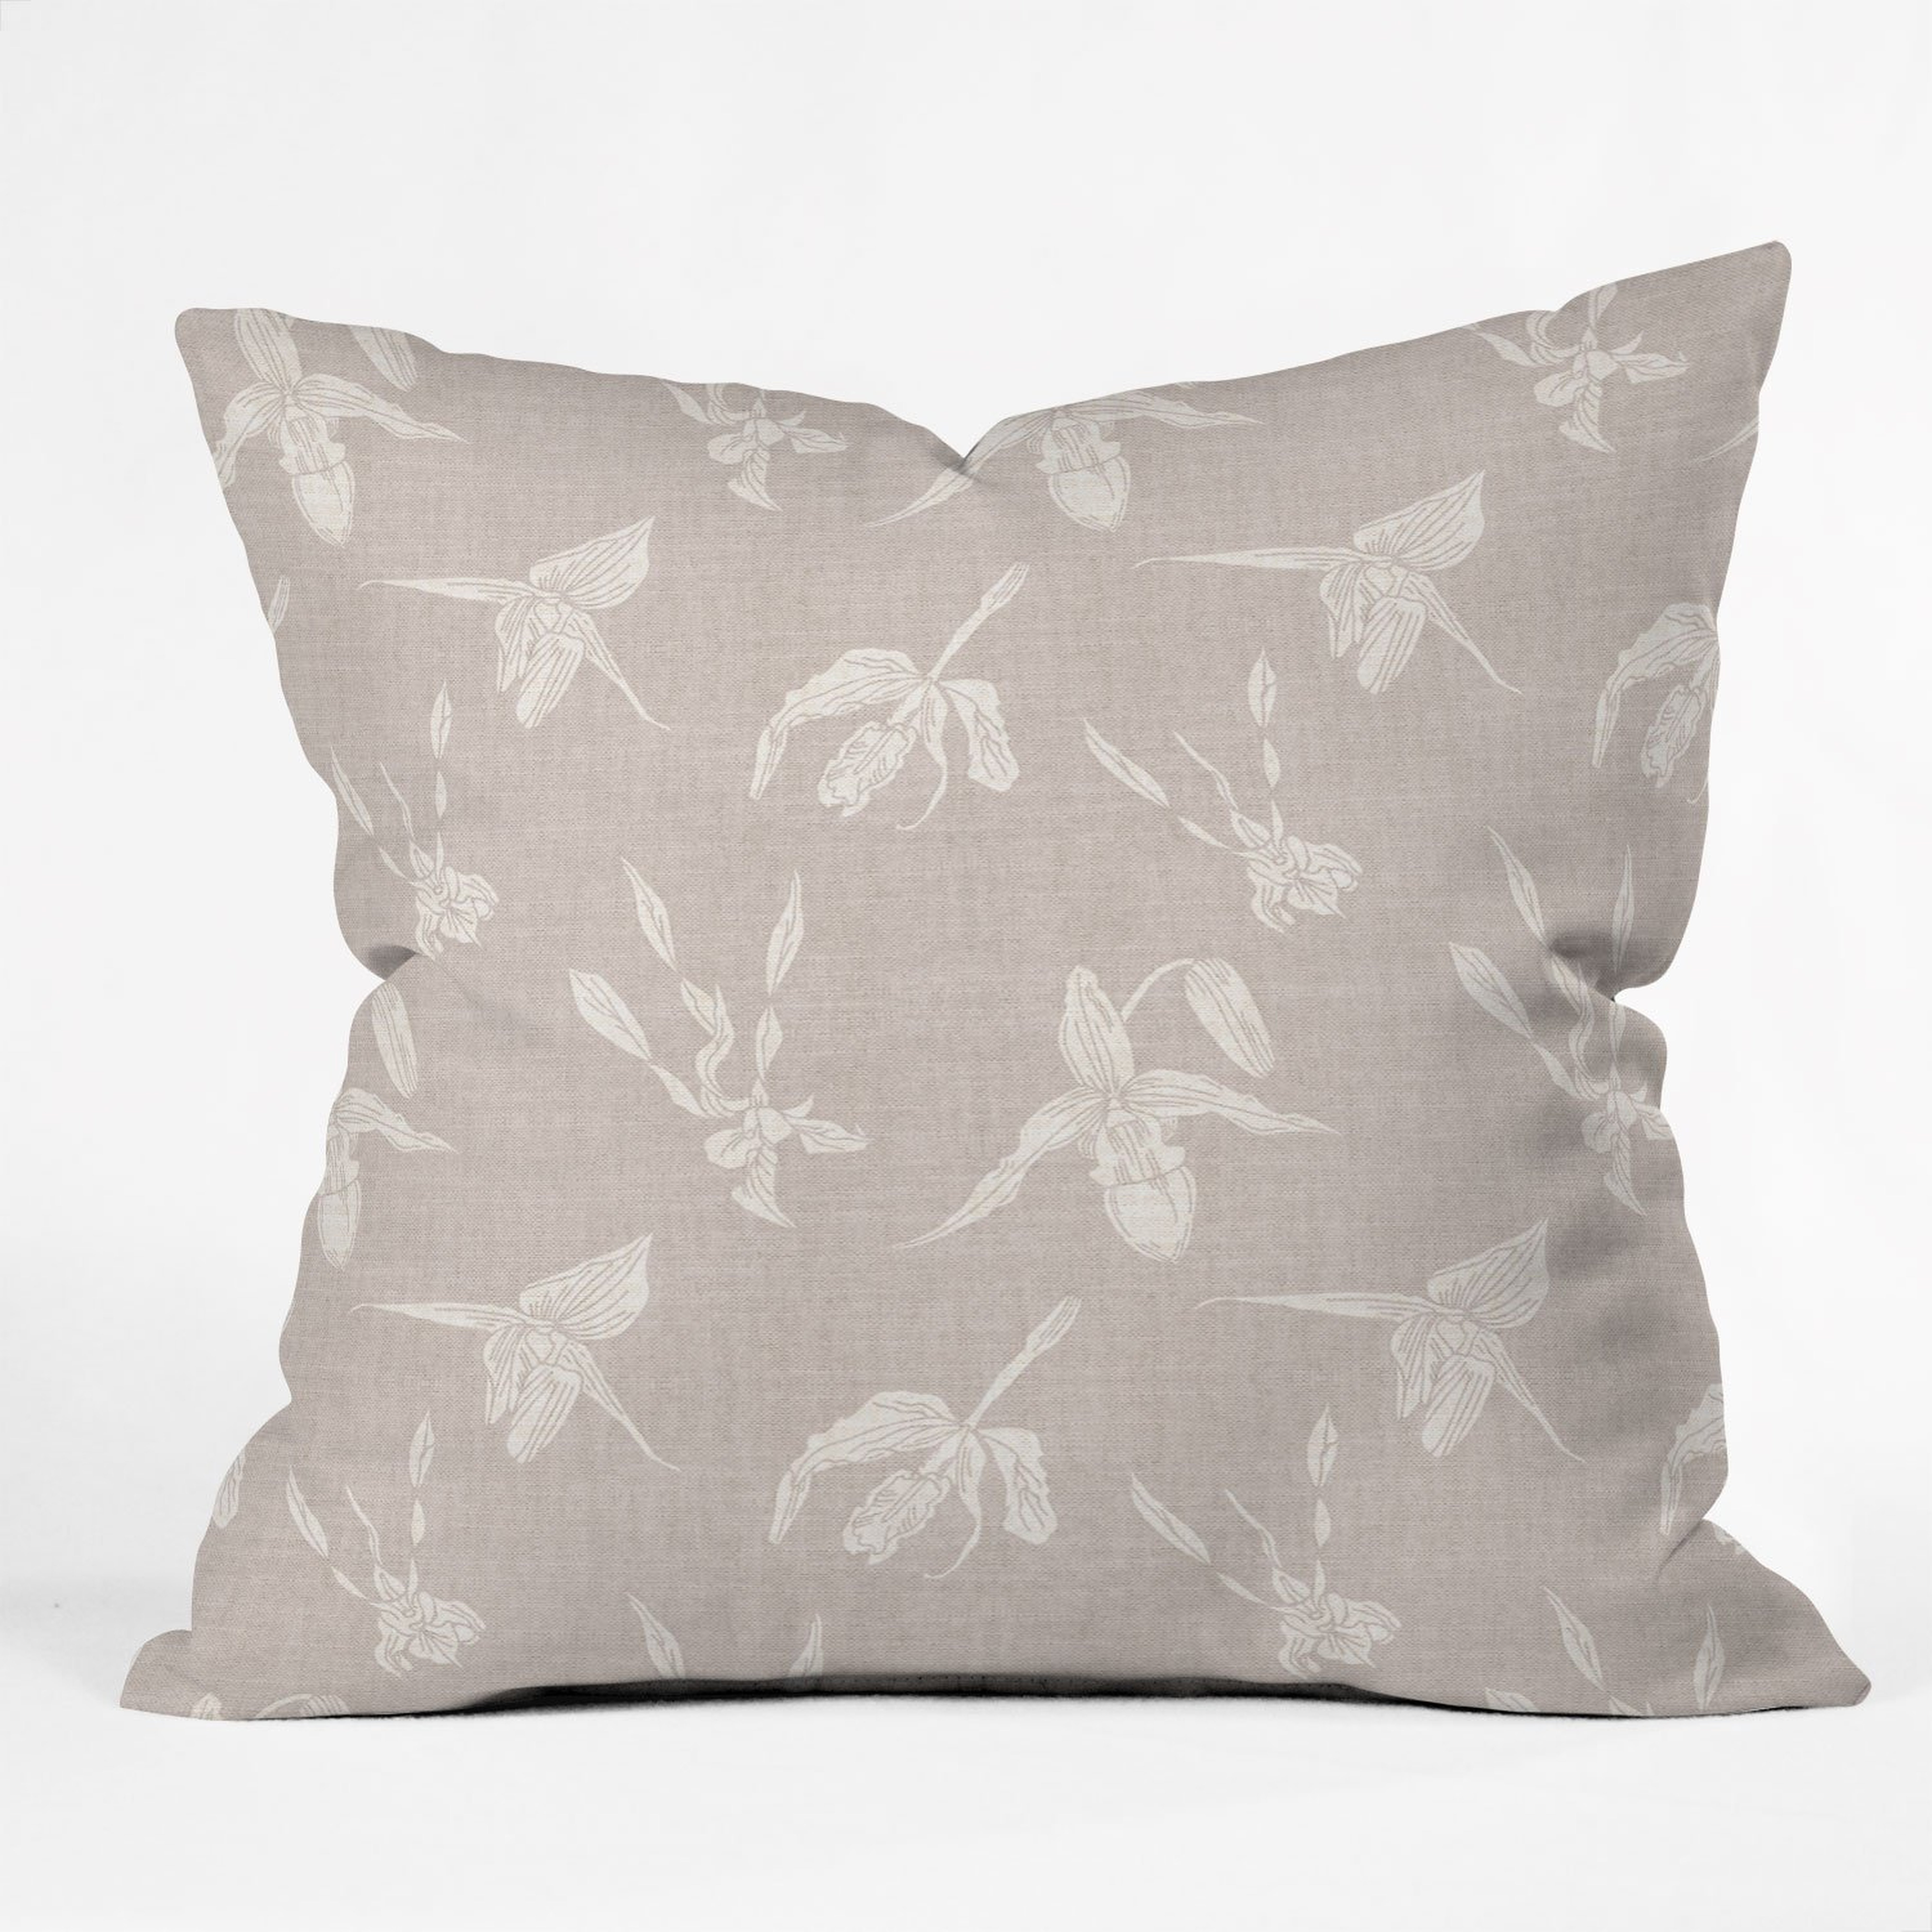 ORCHID LINEN Throw Pillow - 18" x 18"" - Polyester Insert - Wander Print Co.